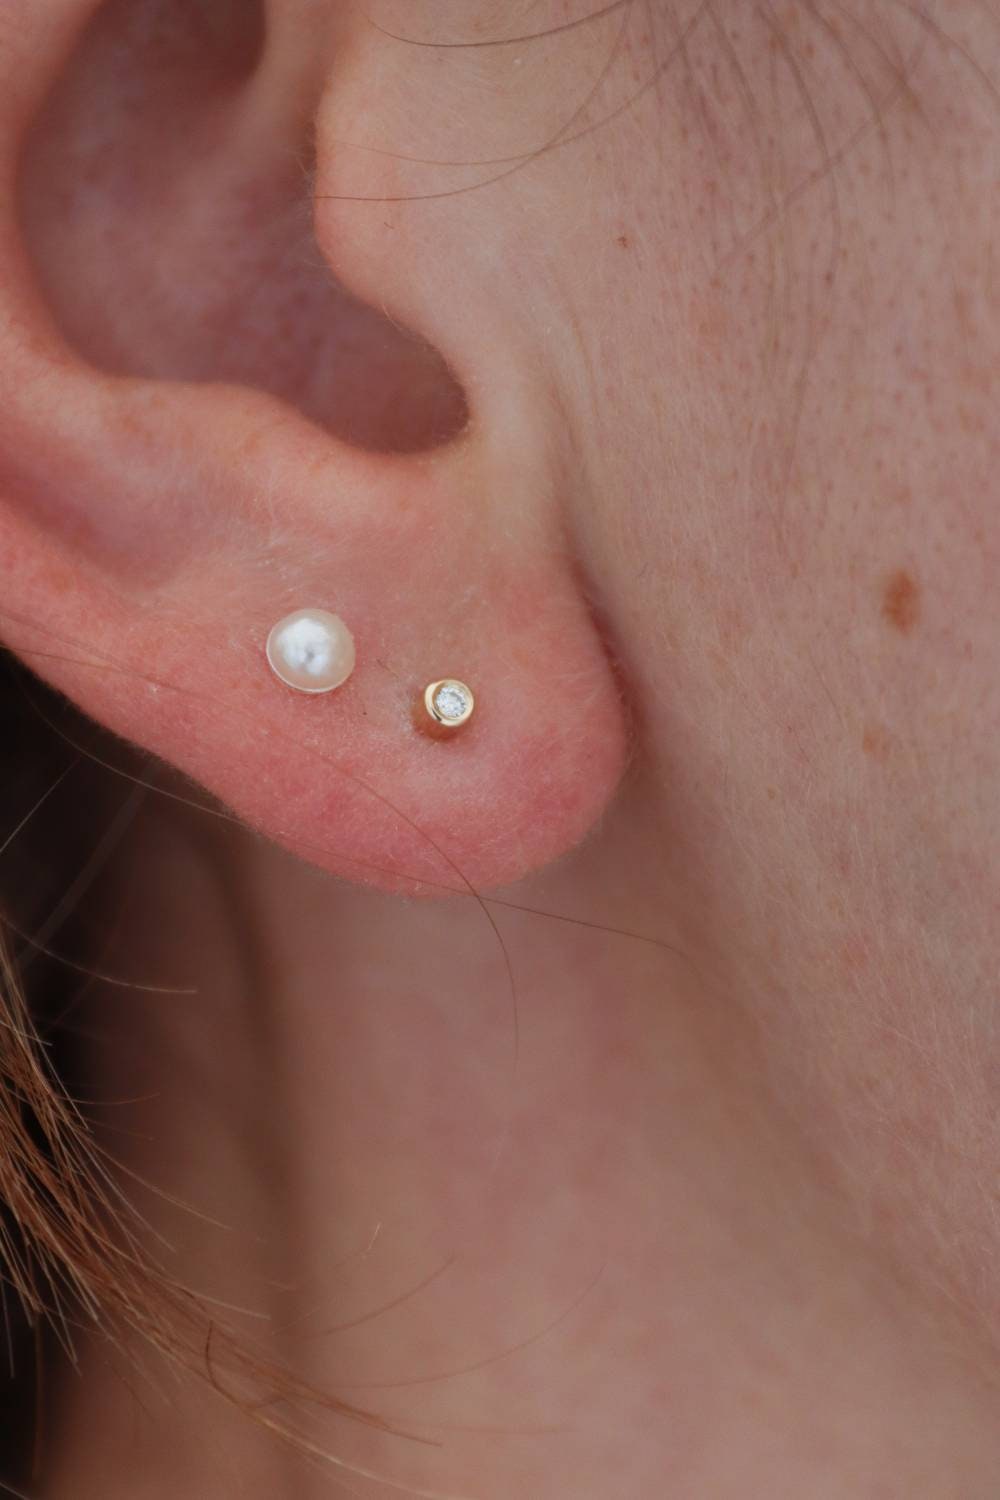 Amazon.com: Earrings For Unpierced Ears